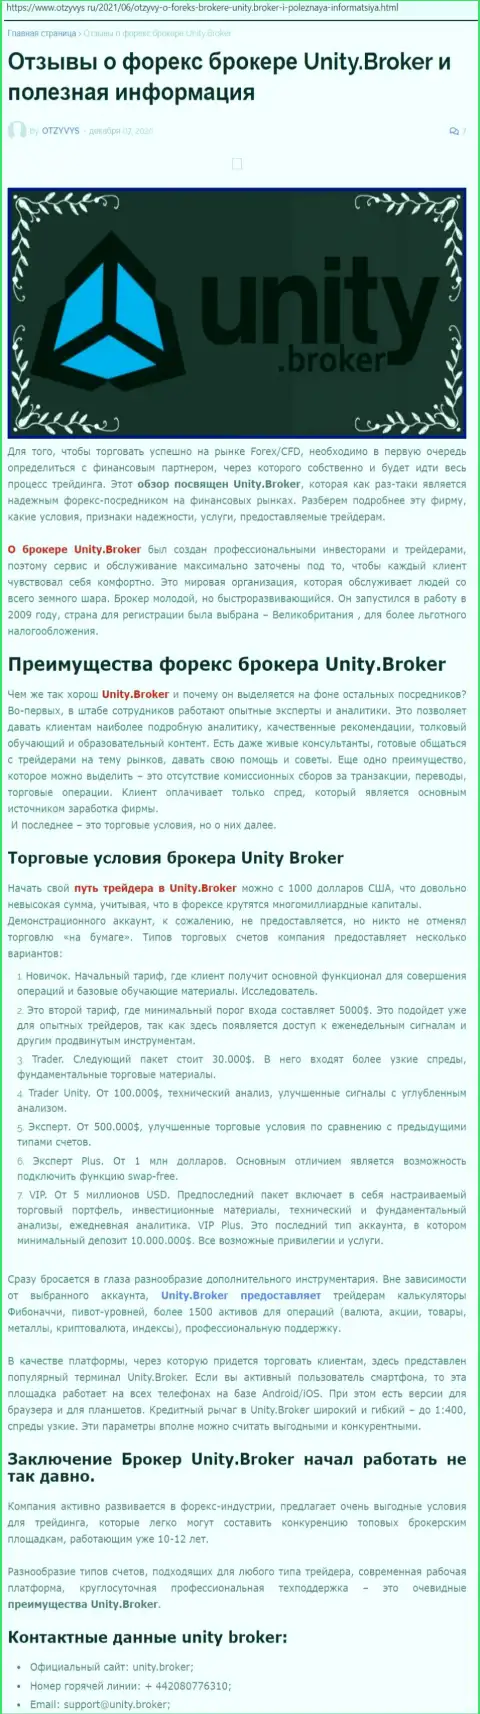 Публикация об форекс-компании Unity Broker на сайте otzyvys ru